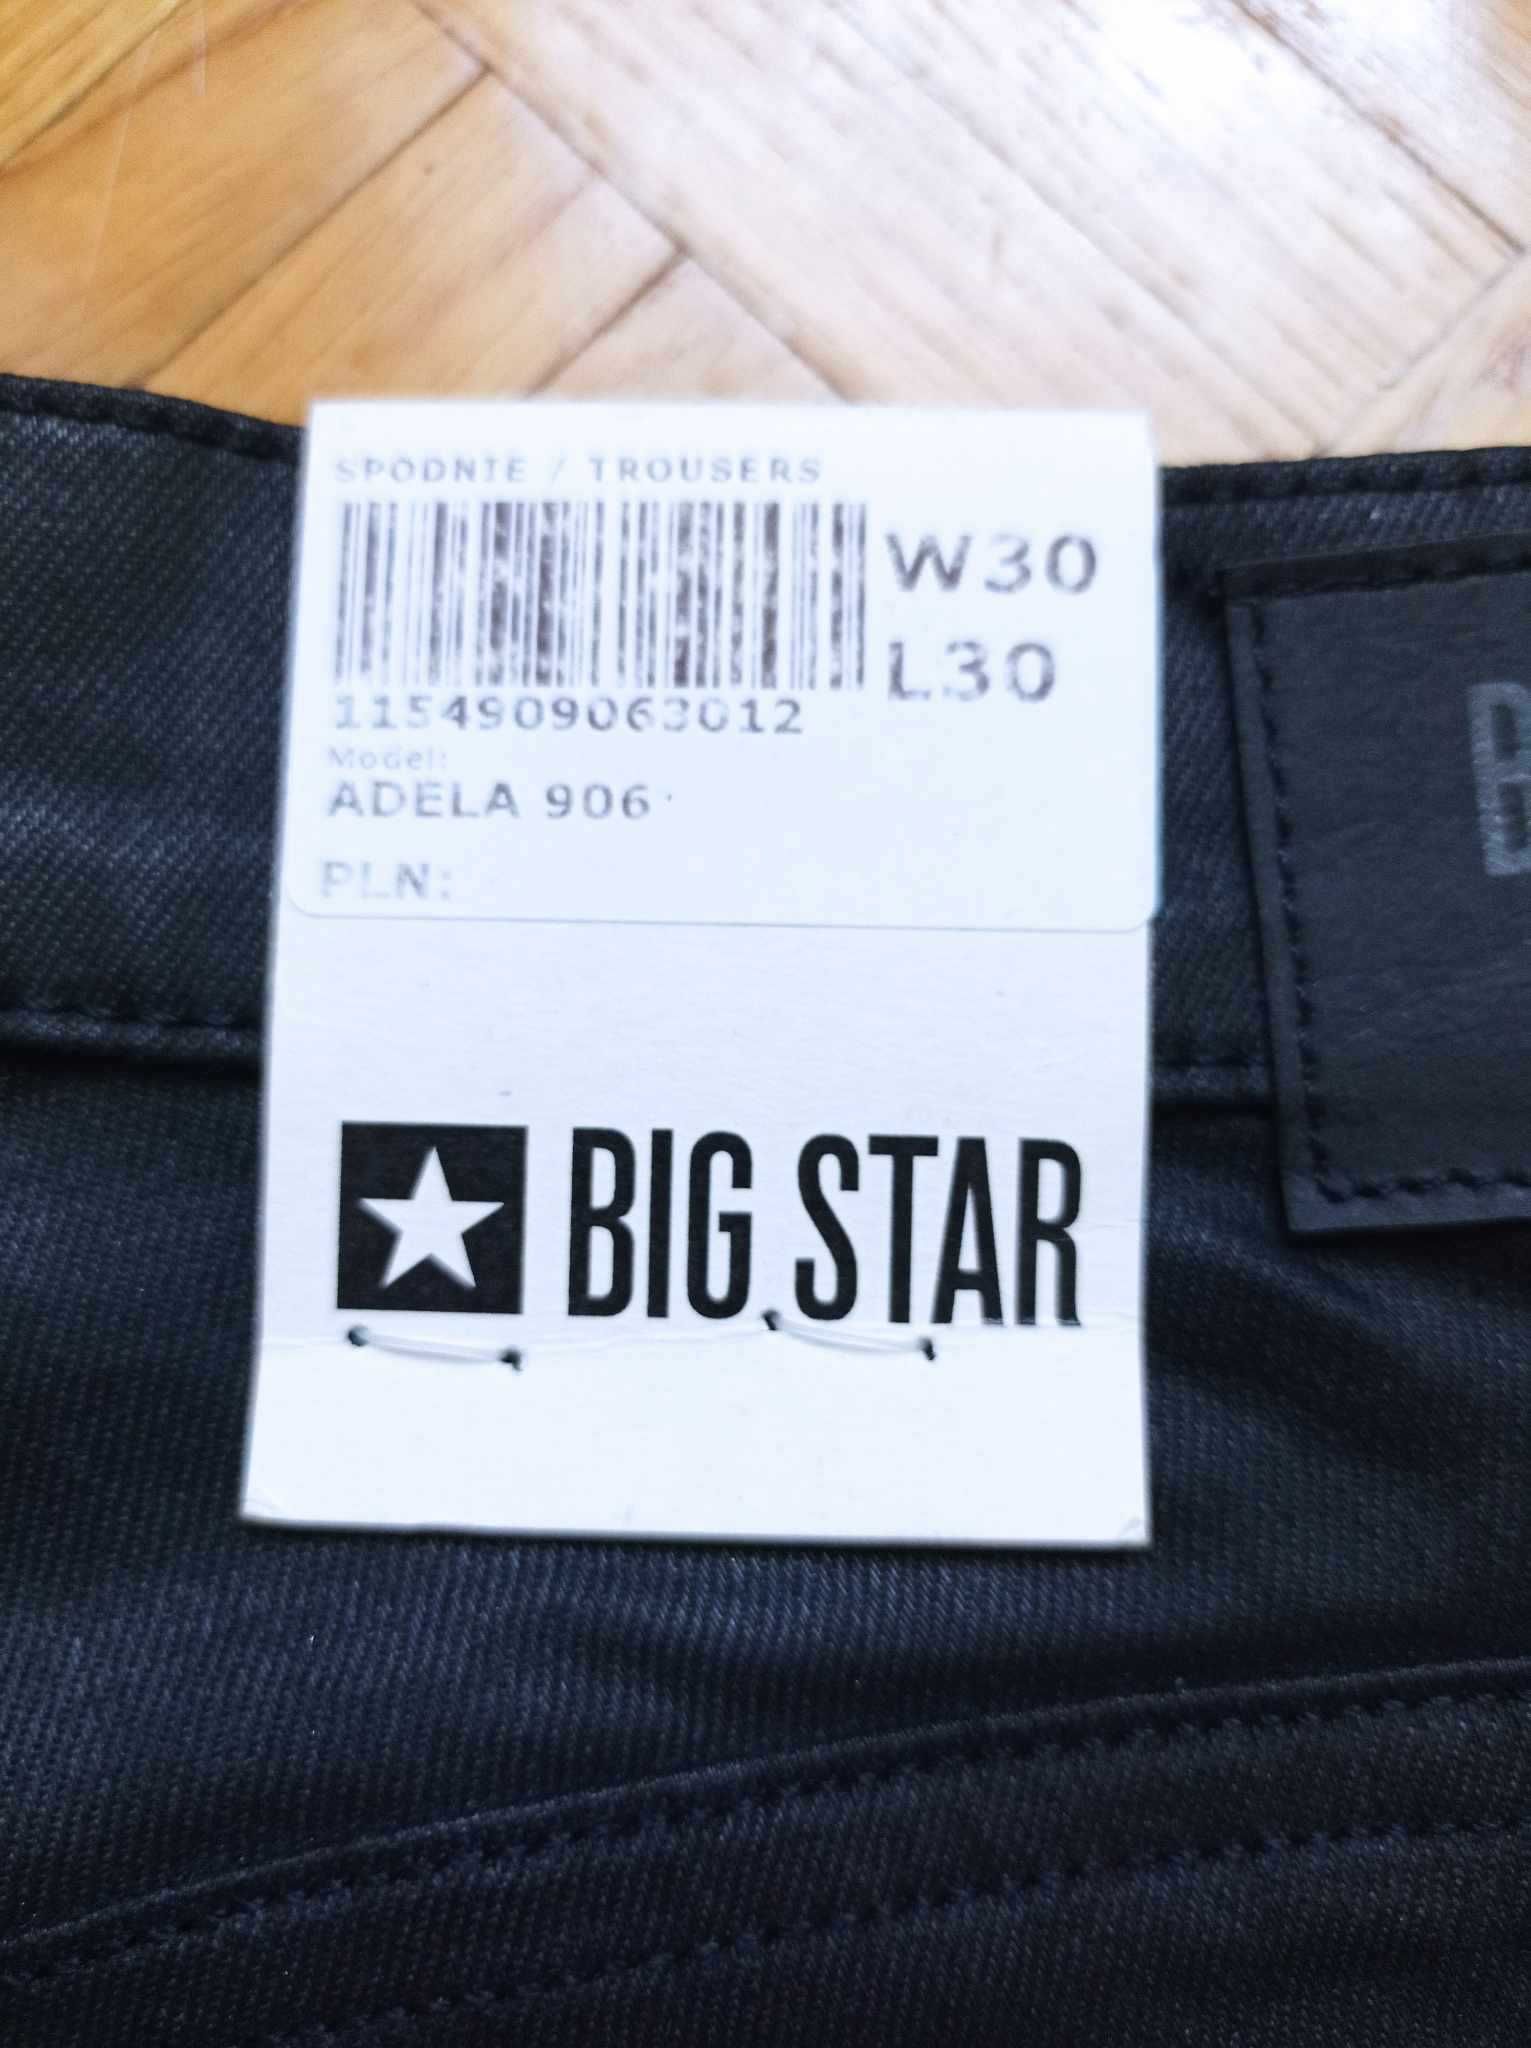 Spodnie damskie Big Star Adela 906 W30 L30